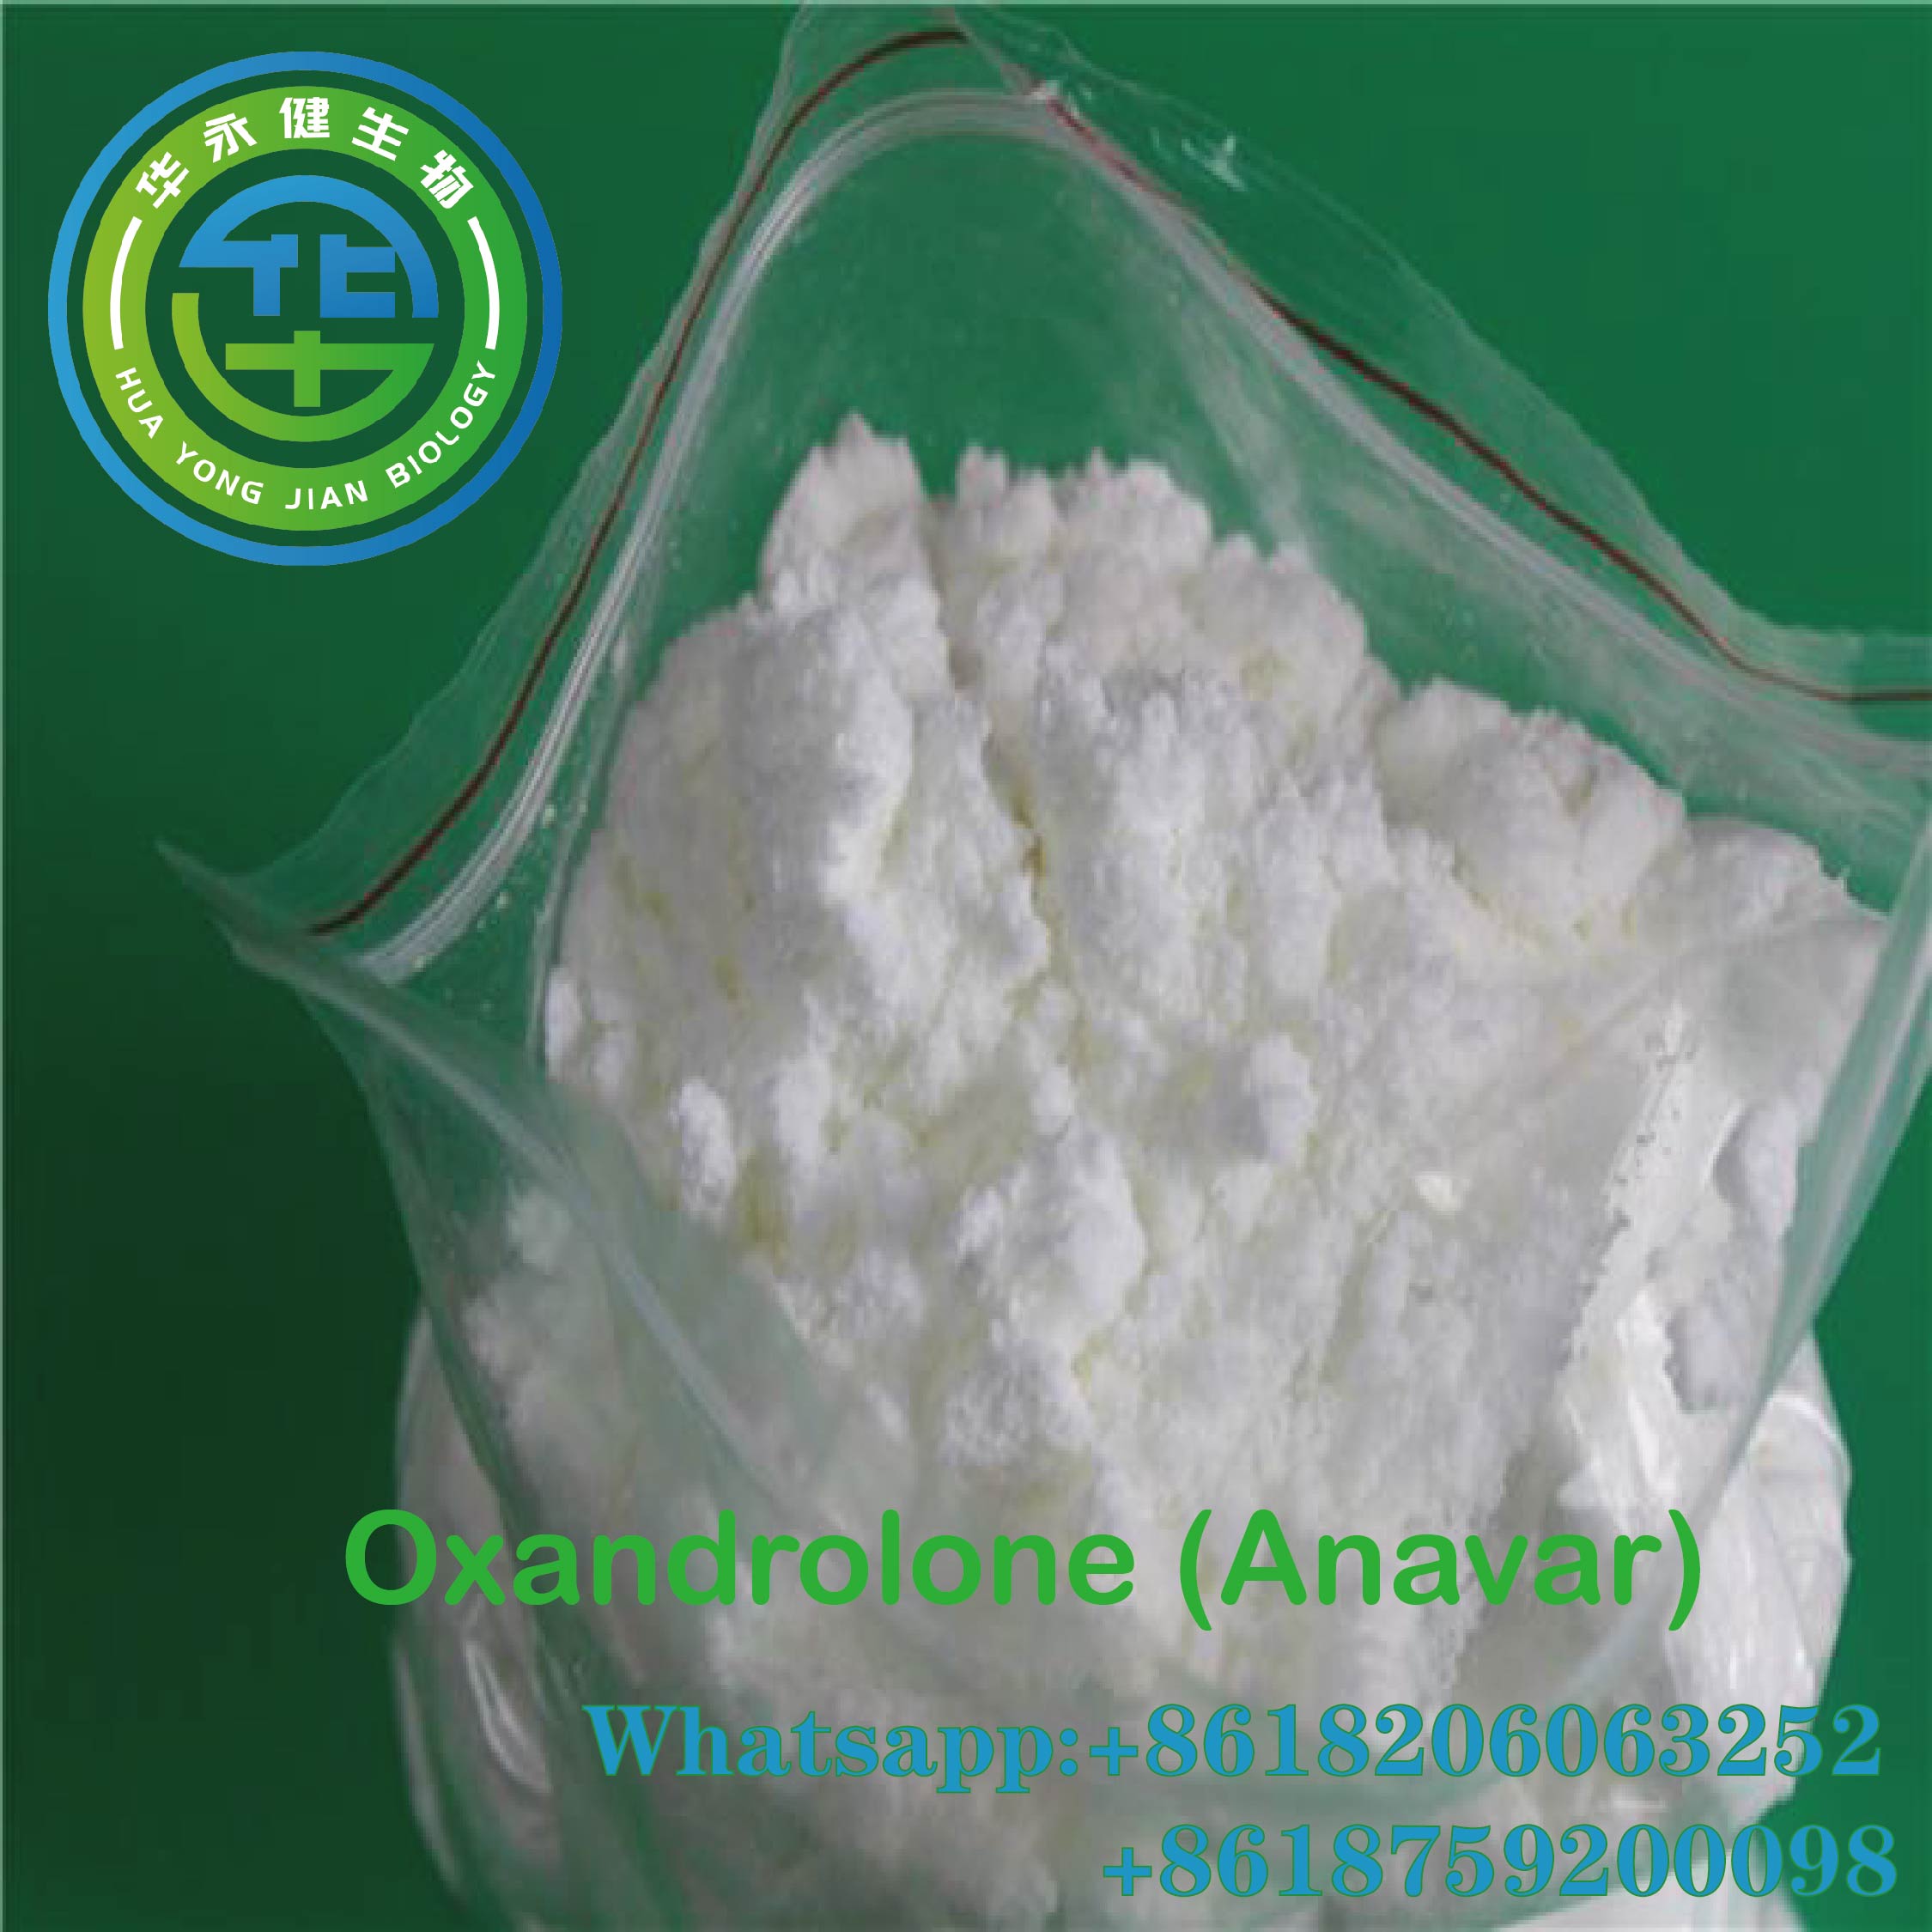 Oxandrolone Powder Pure USP Epektibo nga OXA Oral Anabolic Steroid Para sa Pagbug-at sa Timbang Anavar CasNO.53-39-4 Featured Image